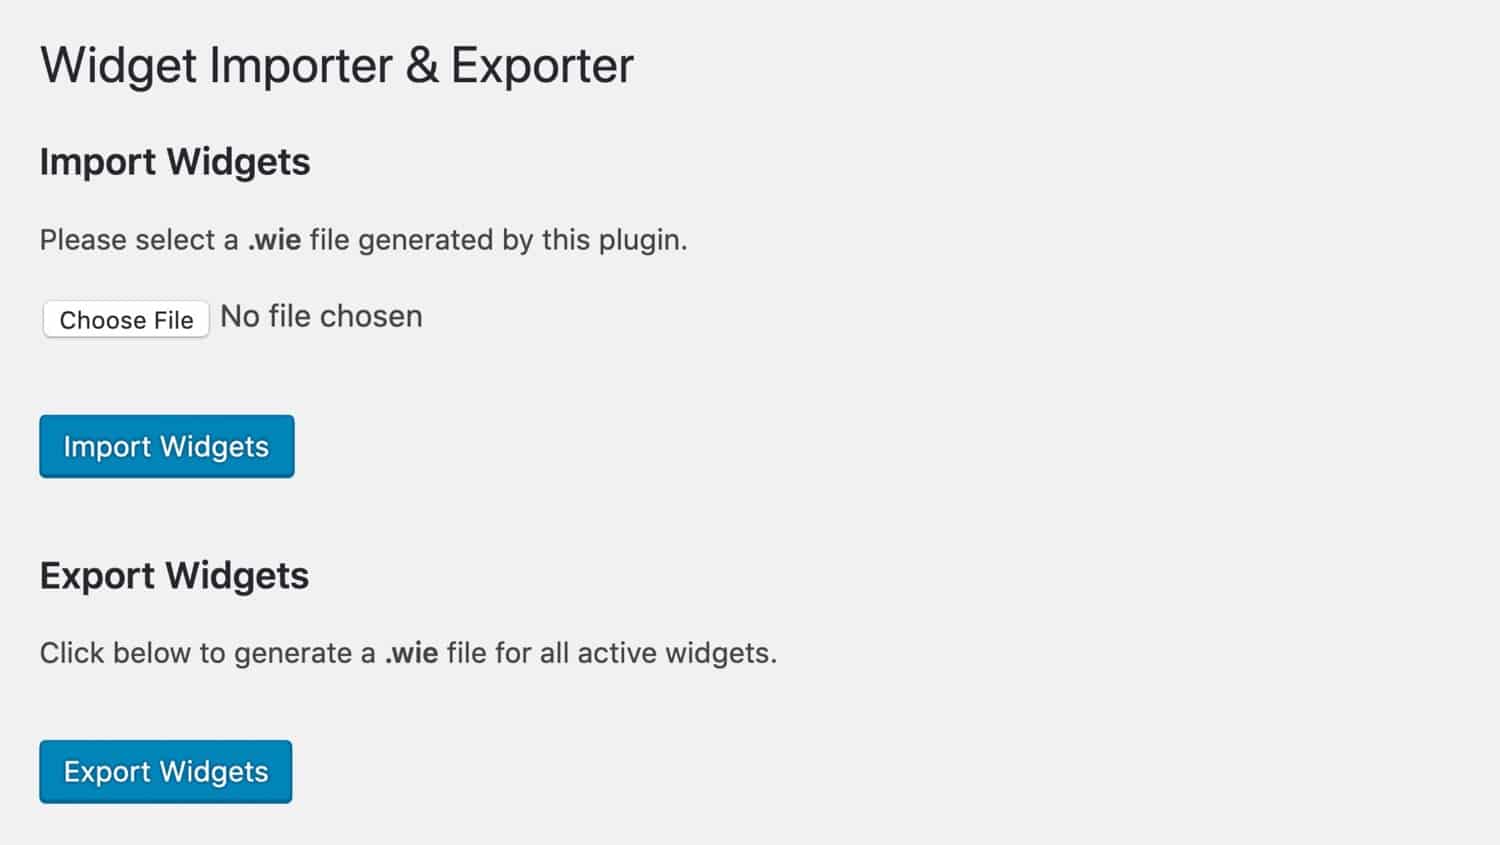 The widget import export screen